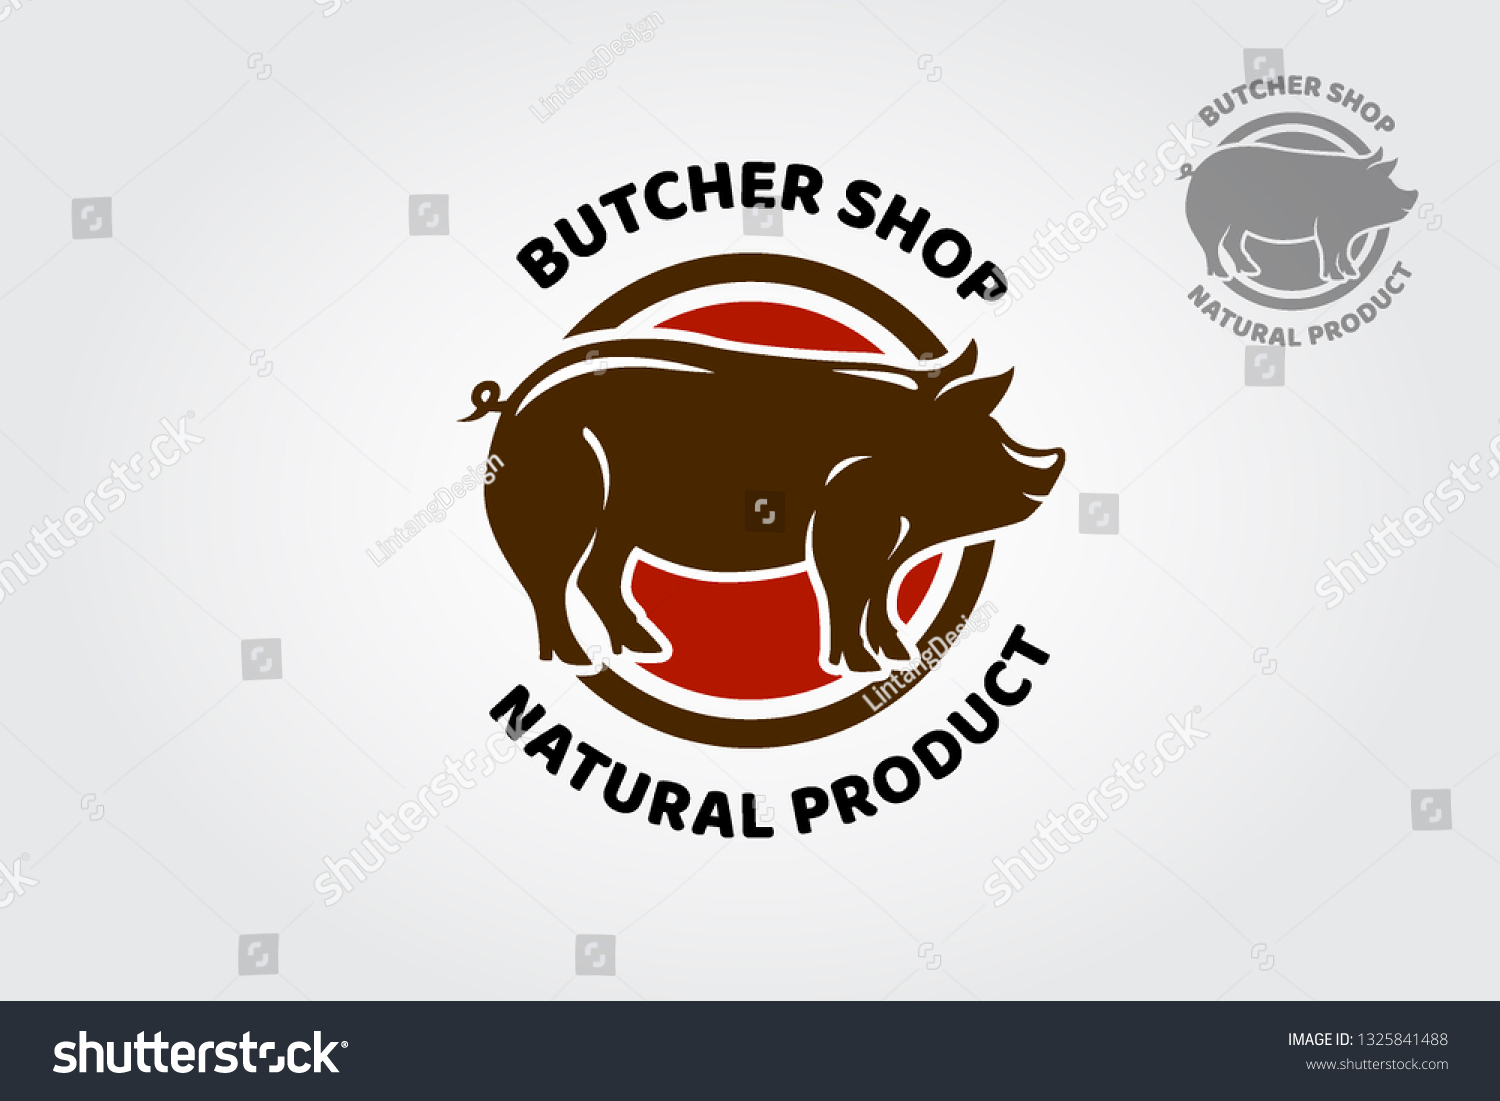 Butcher Shop Logo Highly Suitable Restaurants Stock Illustration ...